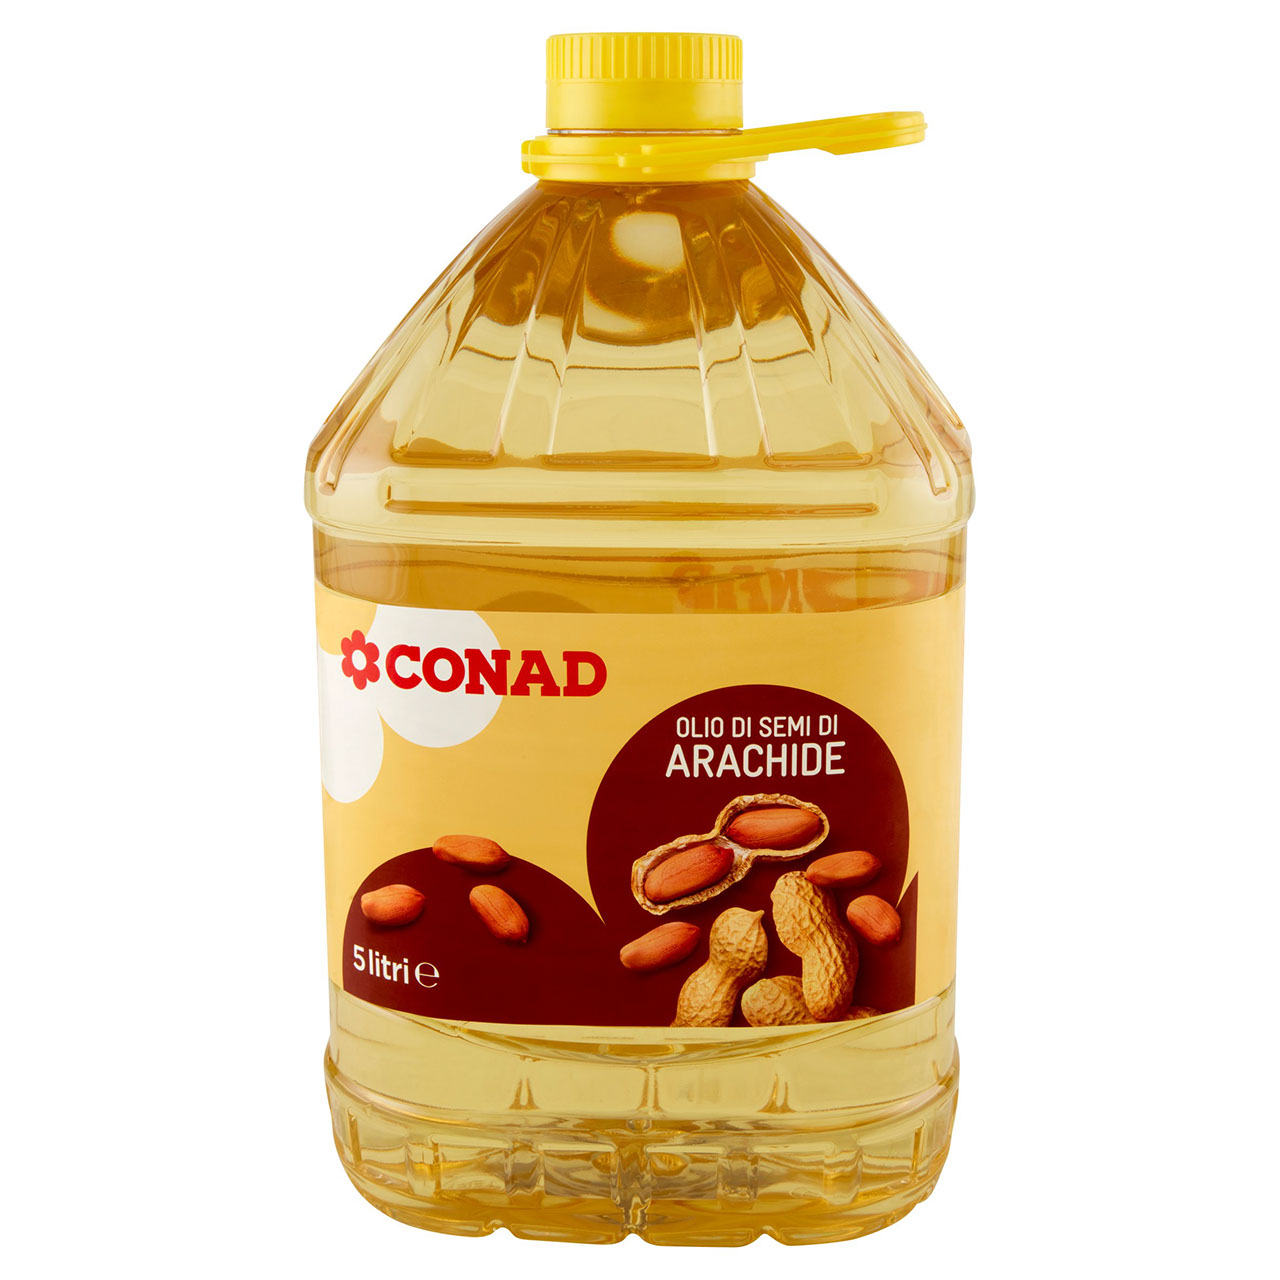 Olio di semi di arachide Conad in vendita online